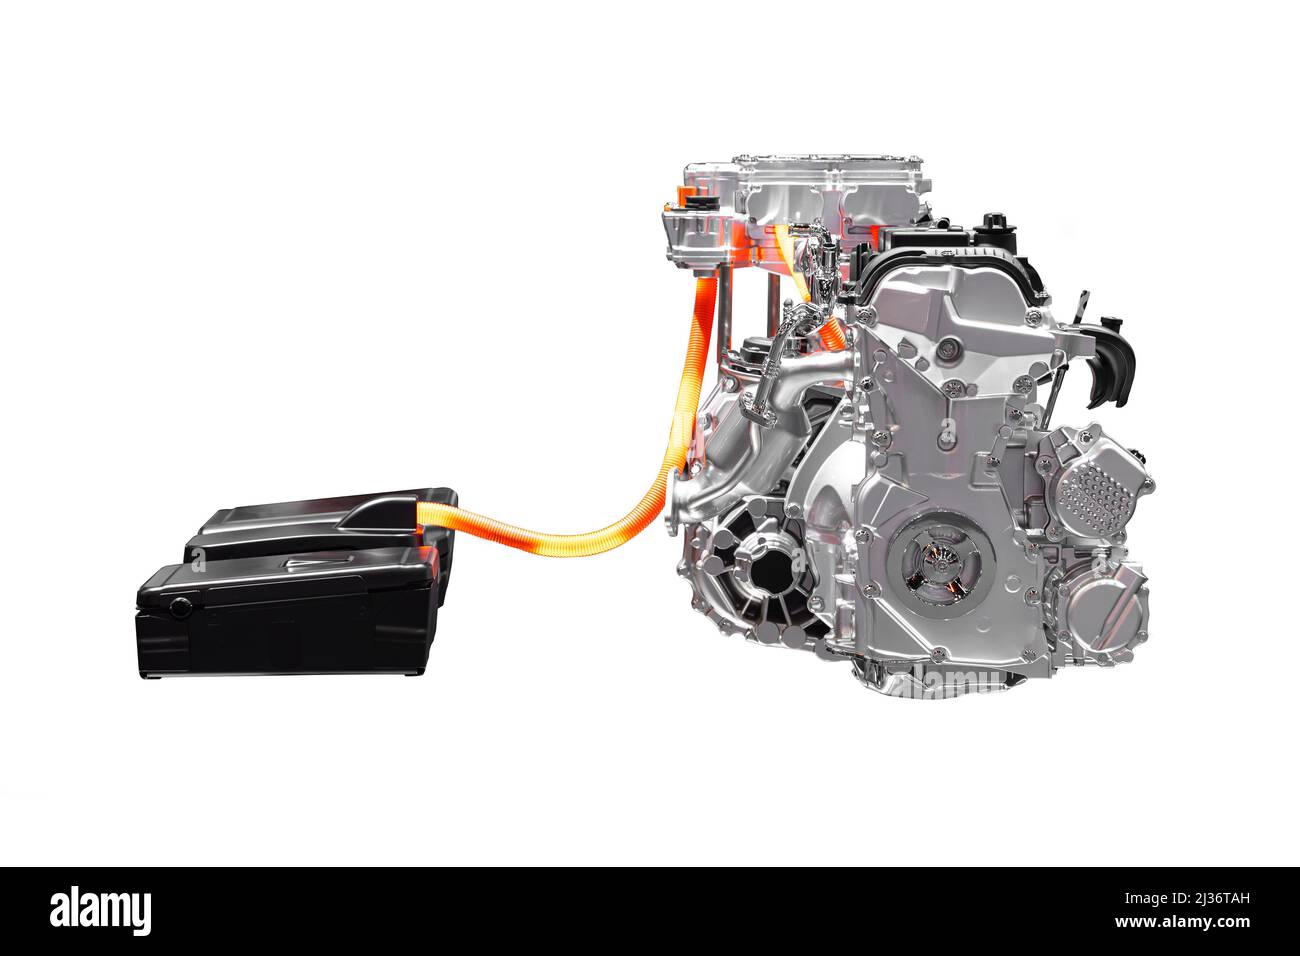 Motore auto veicolo elettrico ibrido, assistenza motore elettrico sistema motore a combustione interna isolato su sfondo bianco. Foto Stock